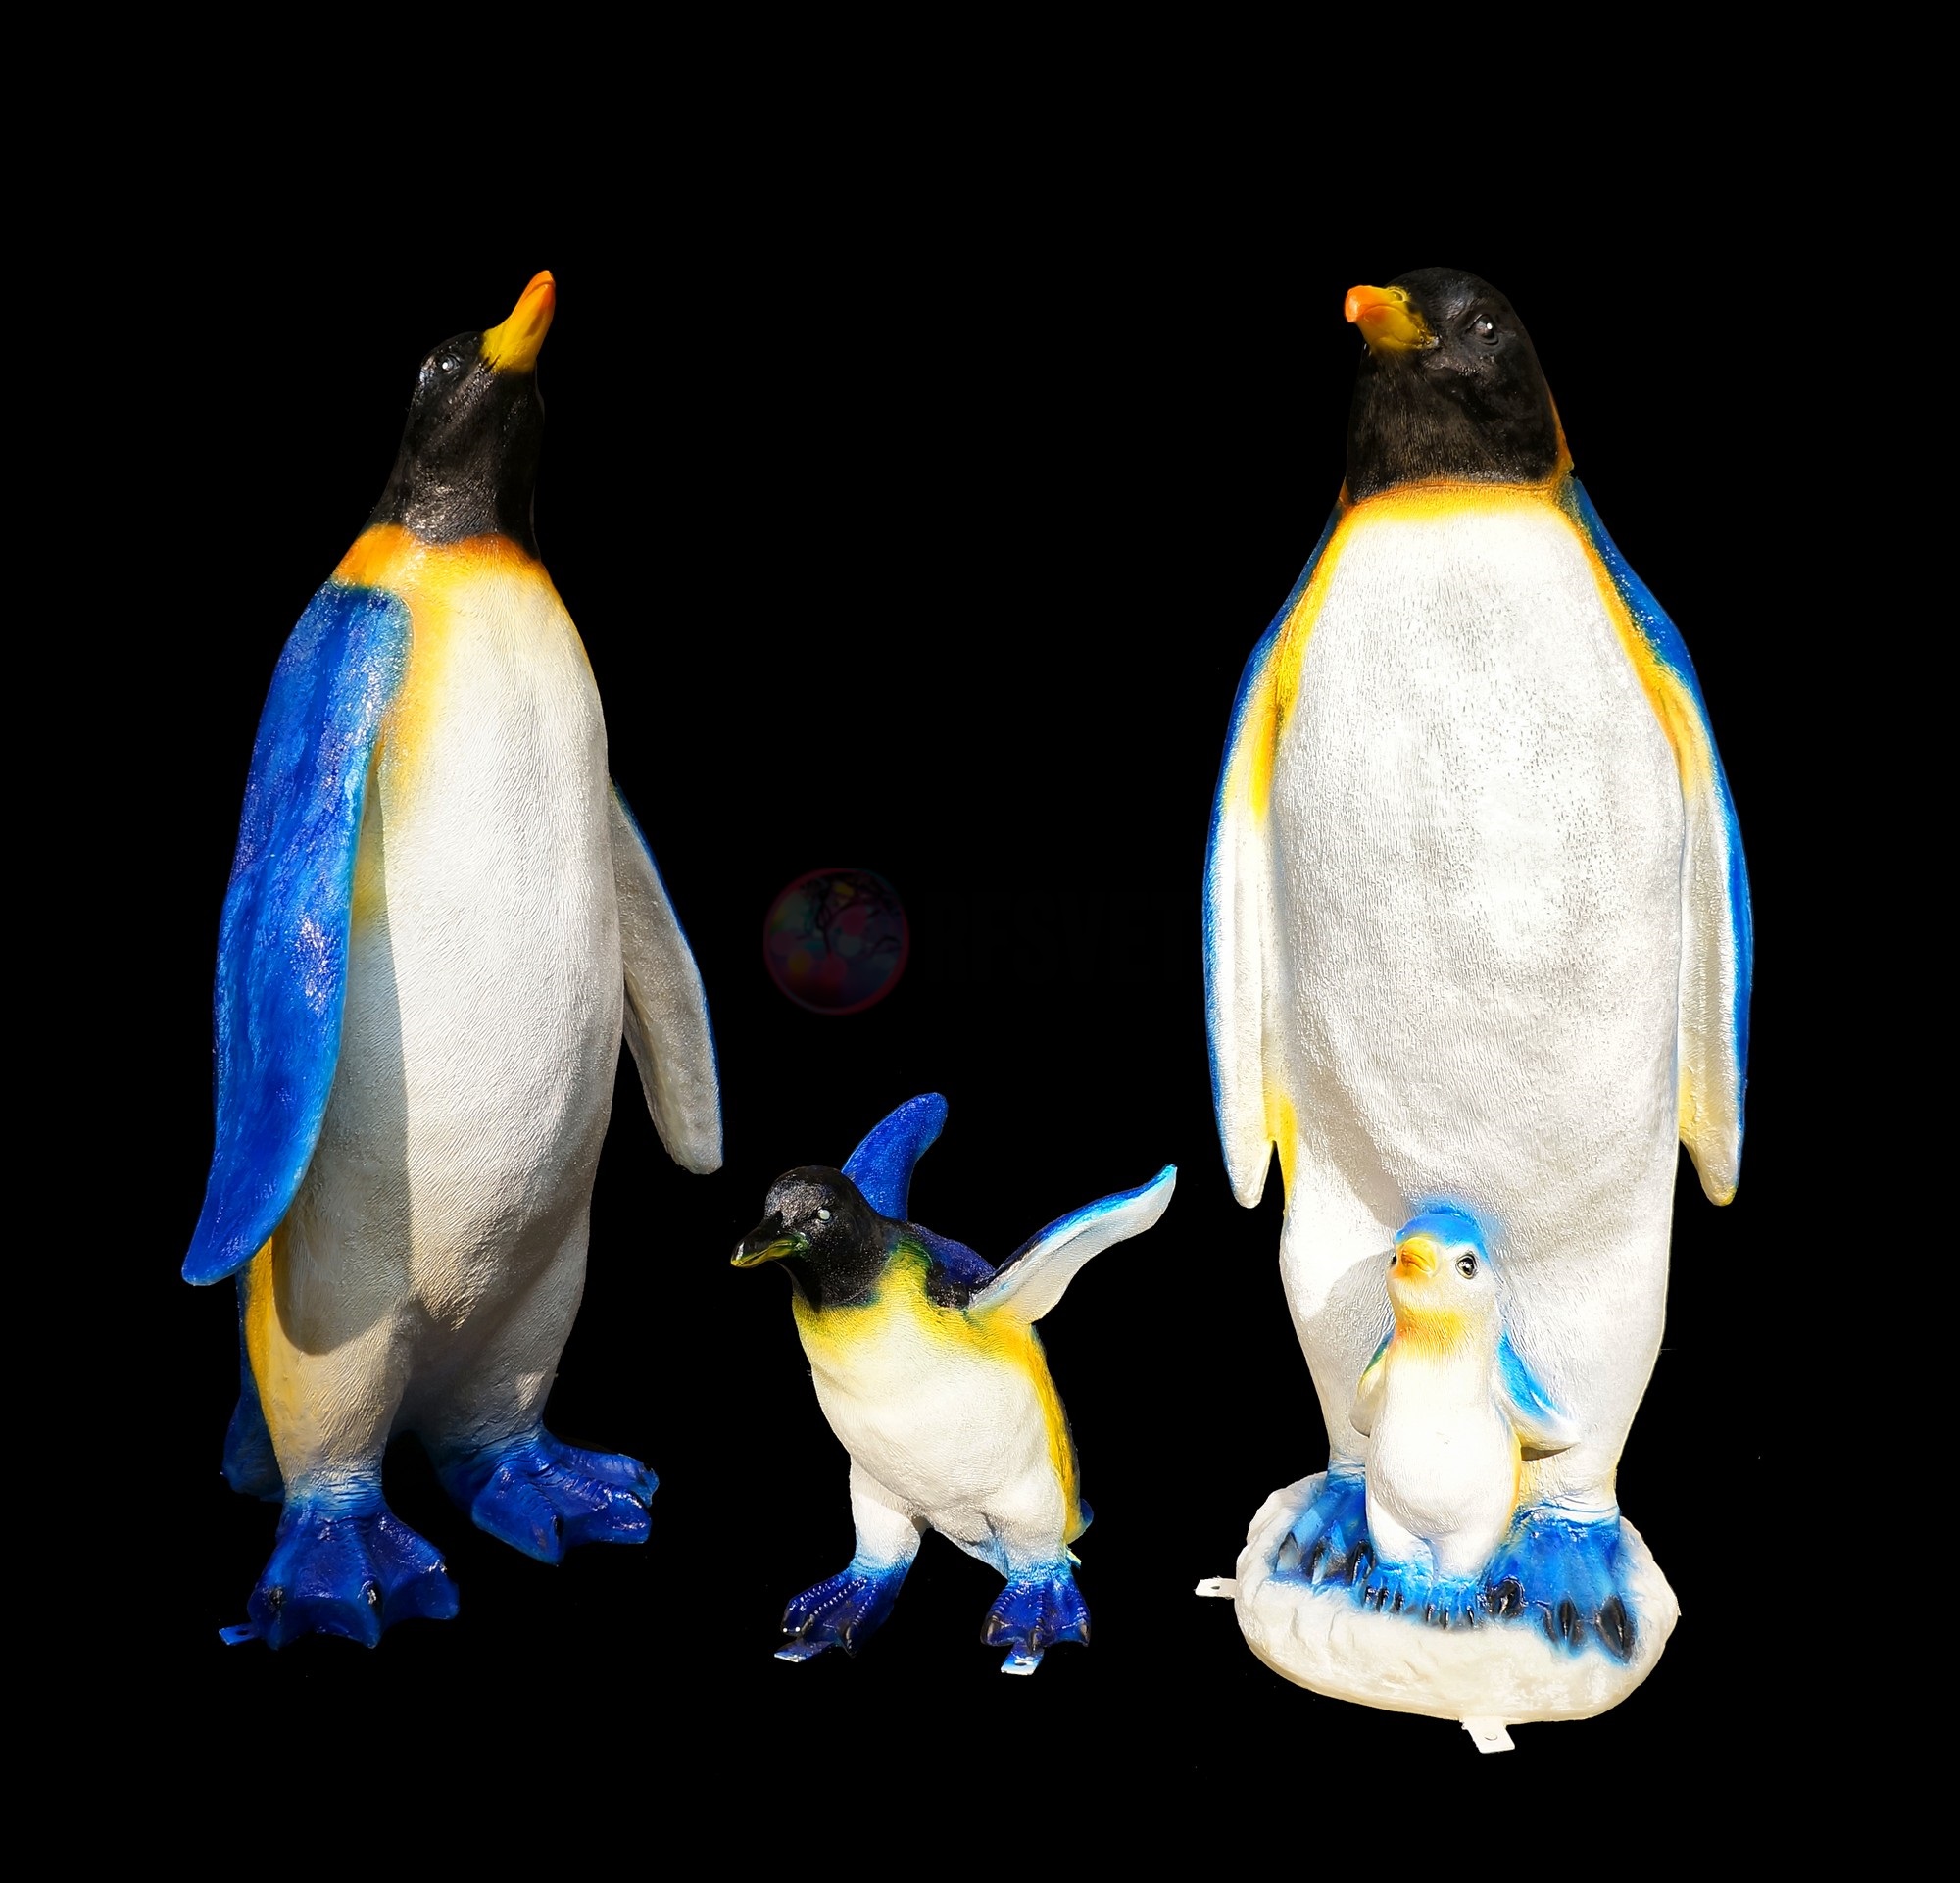 Объемная фигура из стекловолокна "Пингвиненок", 50*30*46 см, с трансформатором